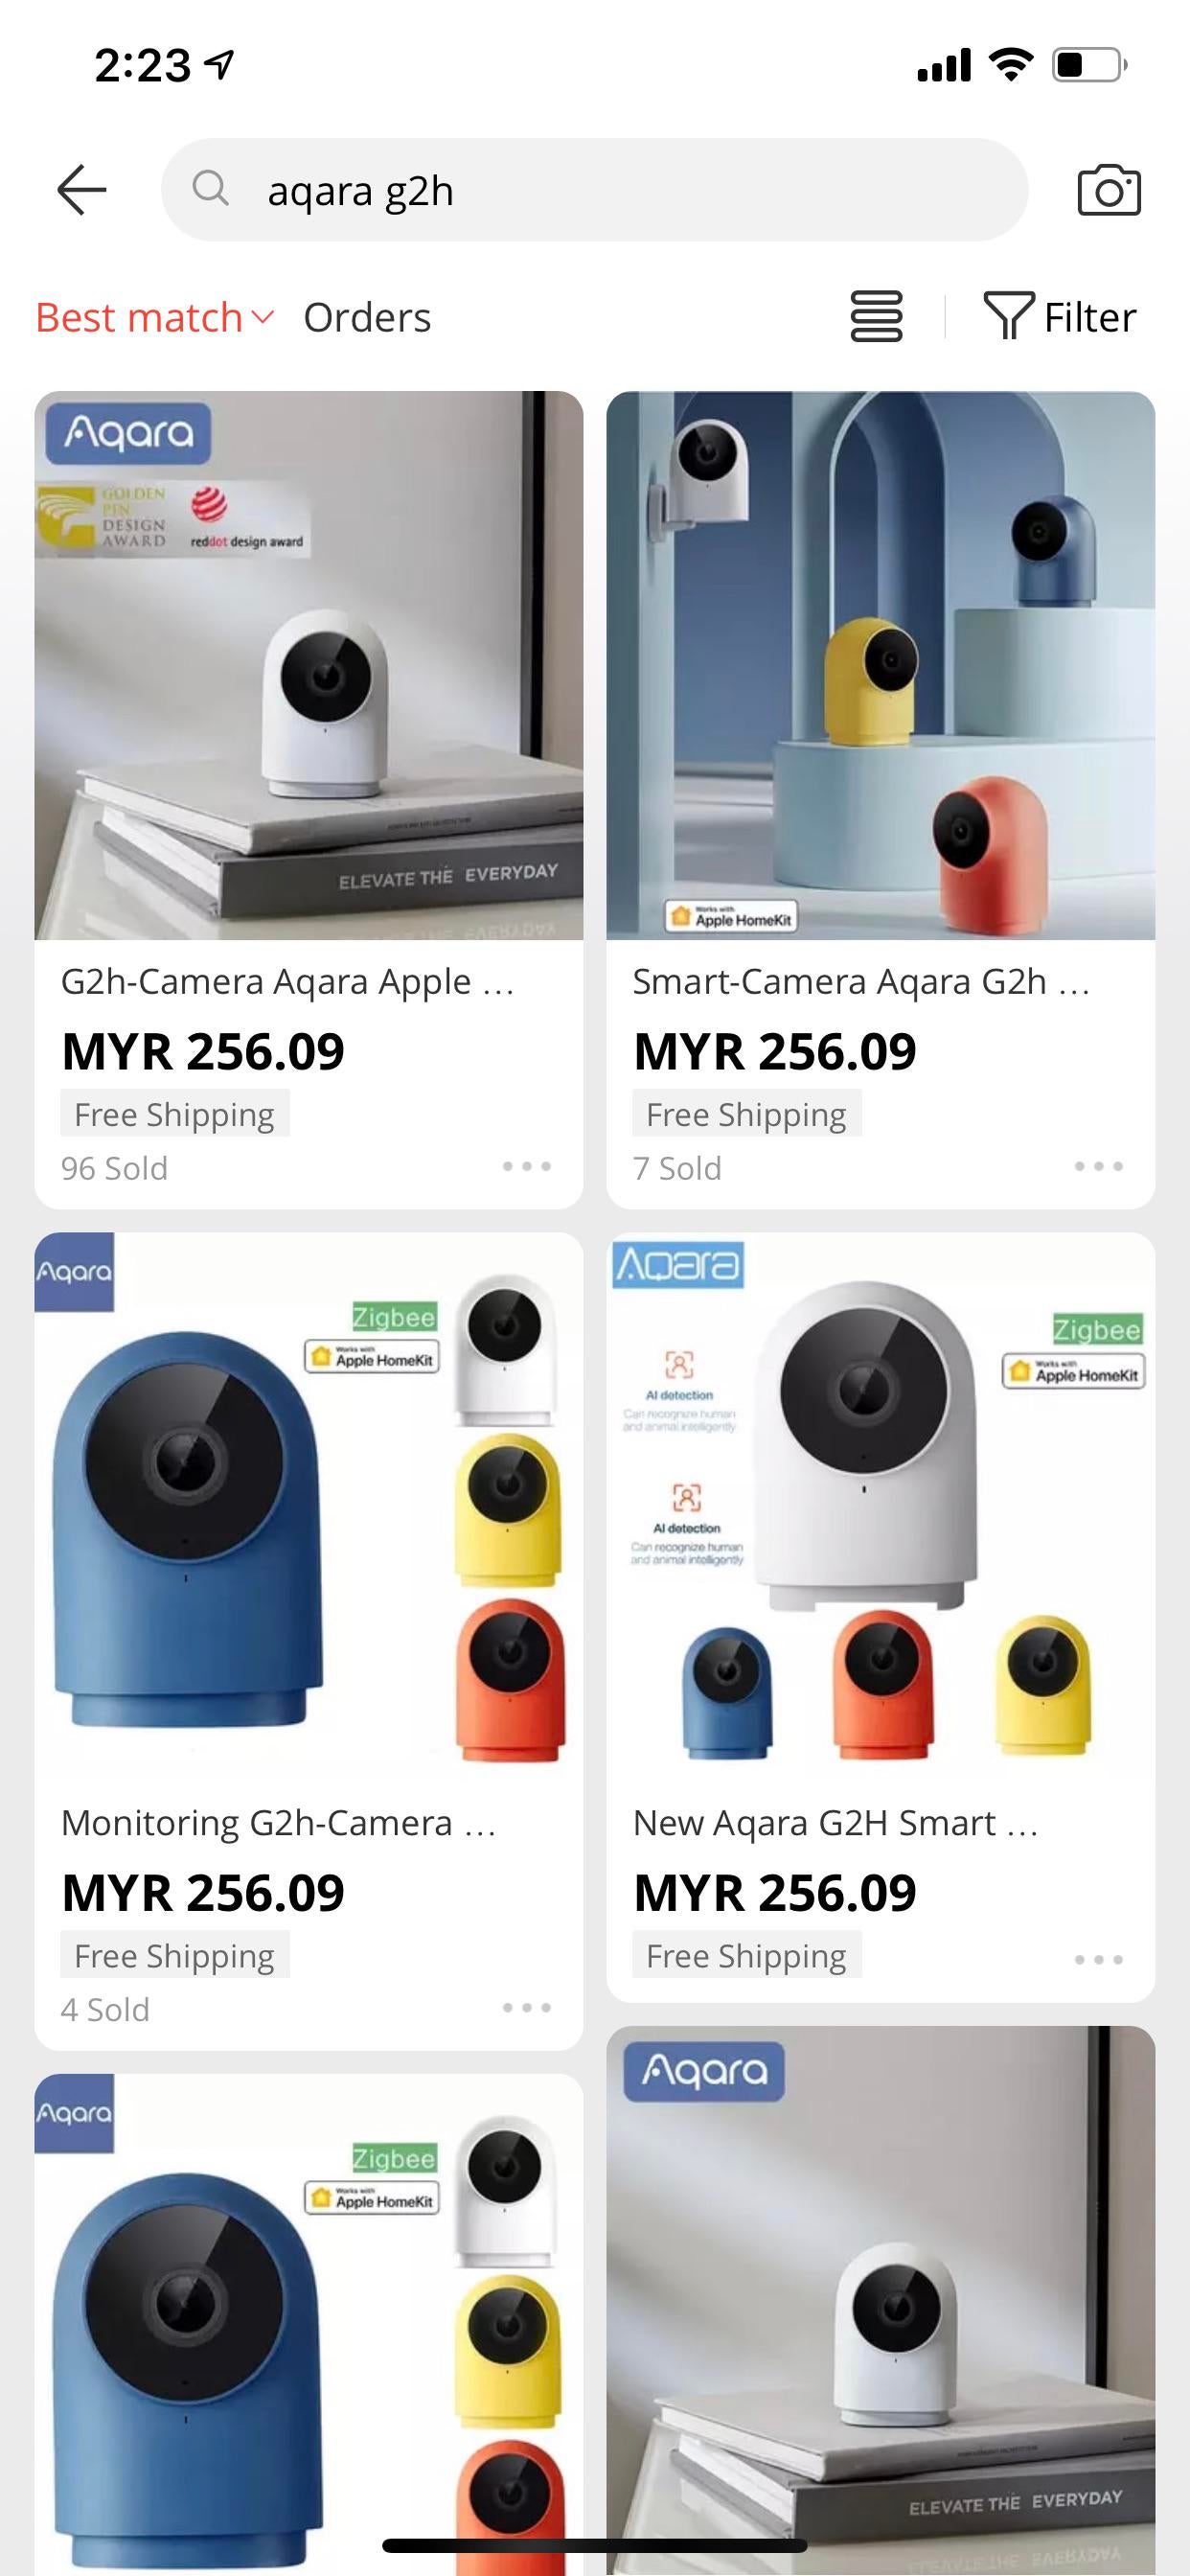 cheapest homekit camera